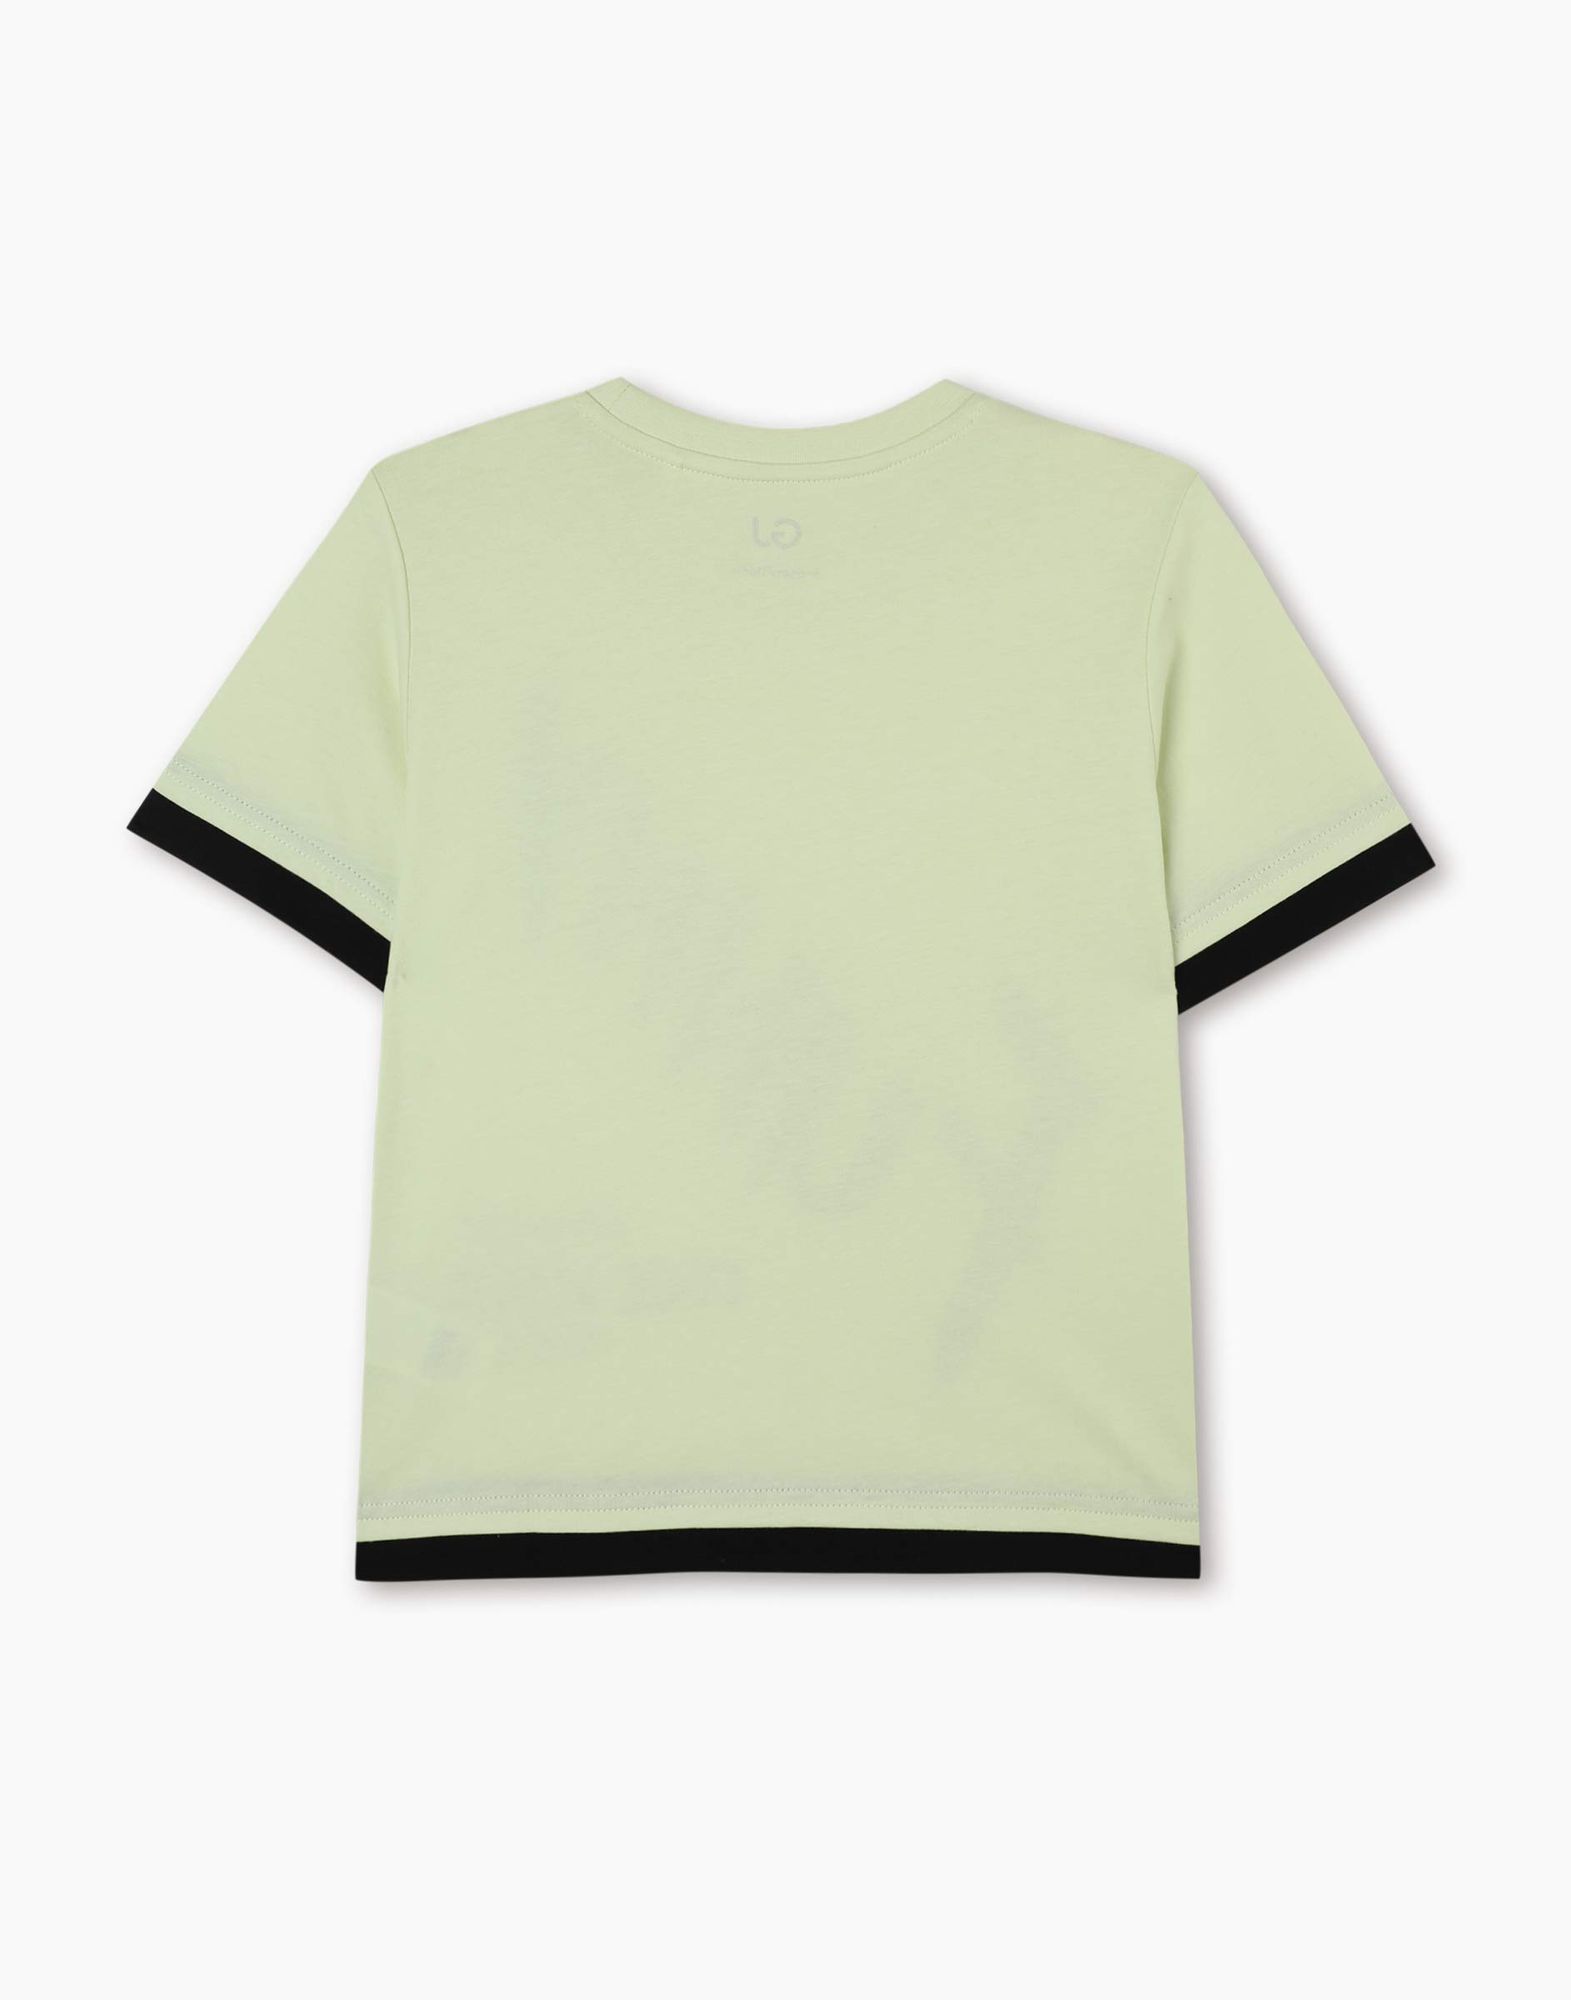 Салатовая футболка с принтом для мальчика-2